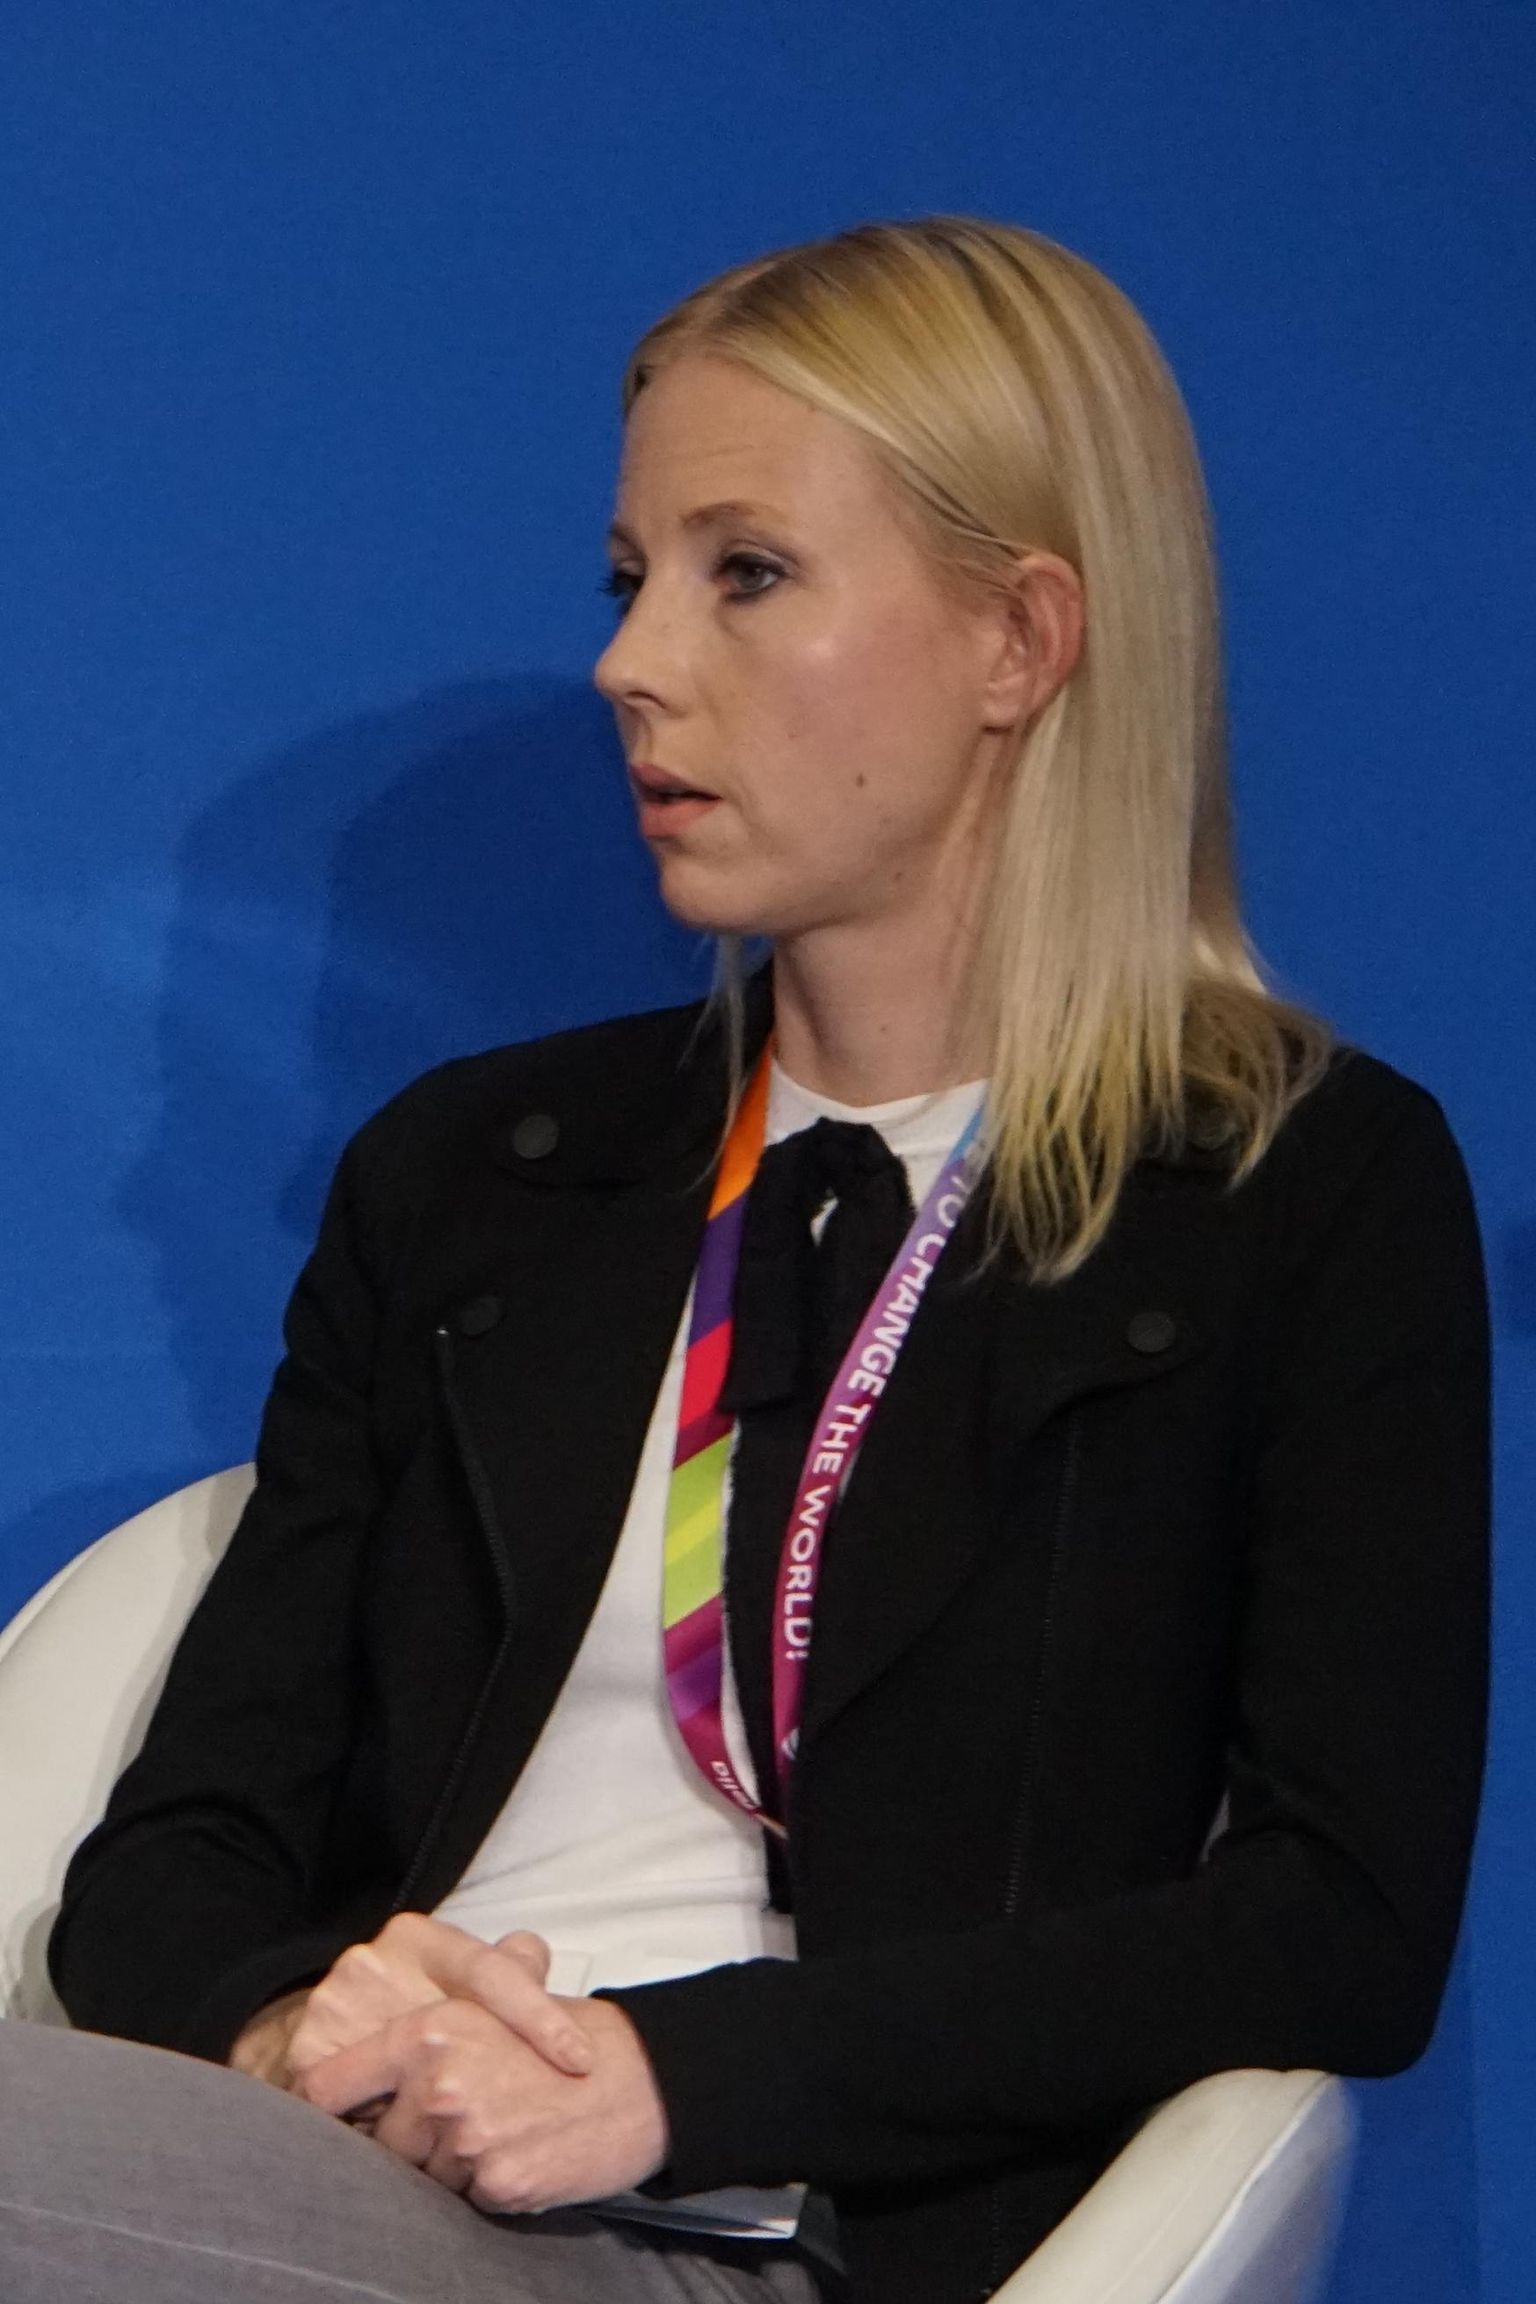 Soome ajakirjanik Jessikka Aro